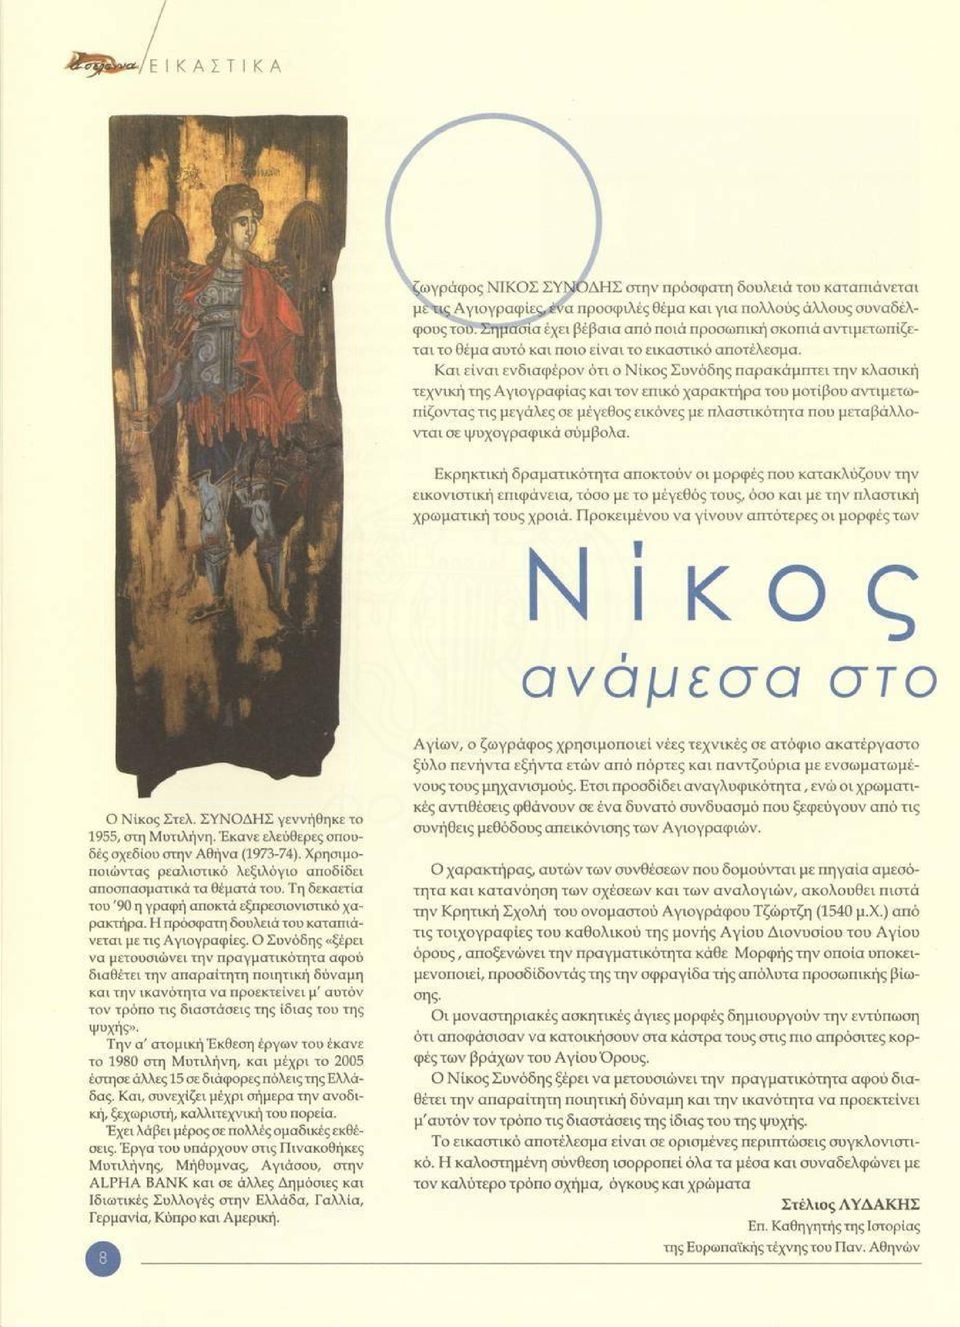 Και είναι ενδιαφέρον ότι ο Νίκος Συνόδης παρακάμπτει την κλασική τεχνική της Αγιογραφίας και τον επικό χαρακτήρα του μοτίβου αντιμετωπίζοντας τις μεγάλες σε μέγεθος εικόνες με πλαστικότητα που